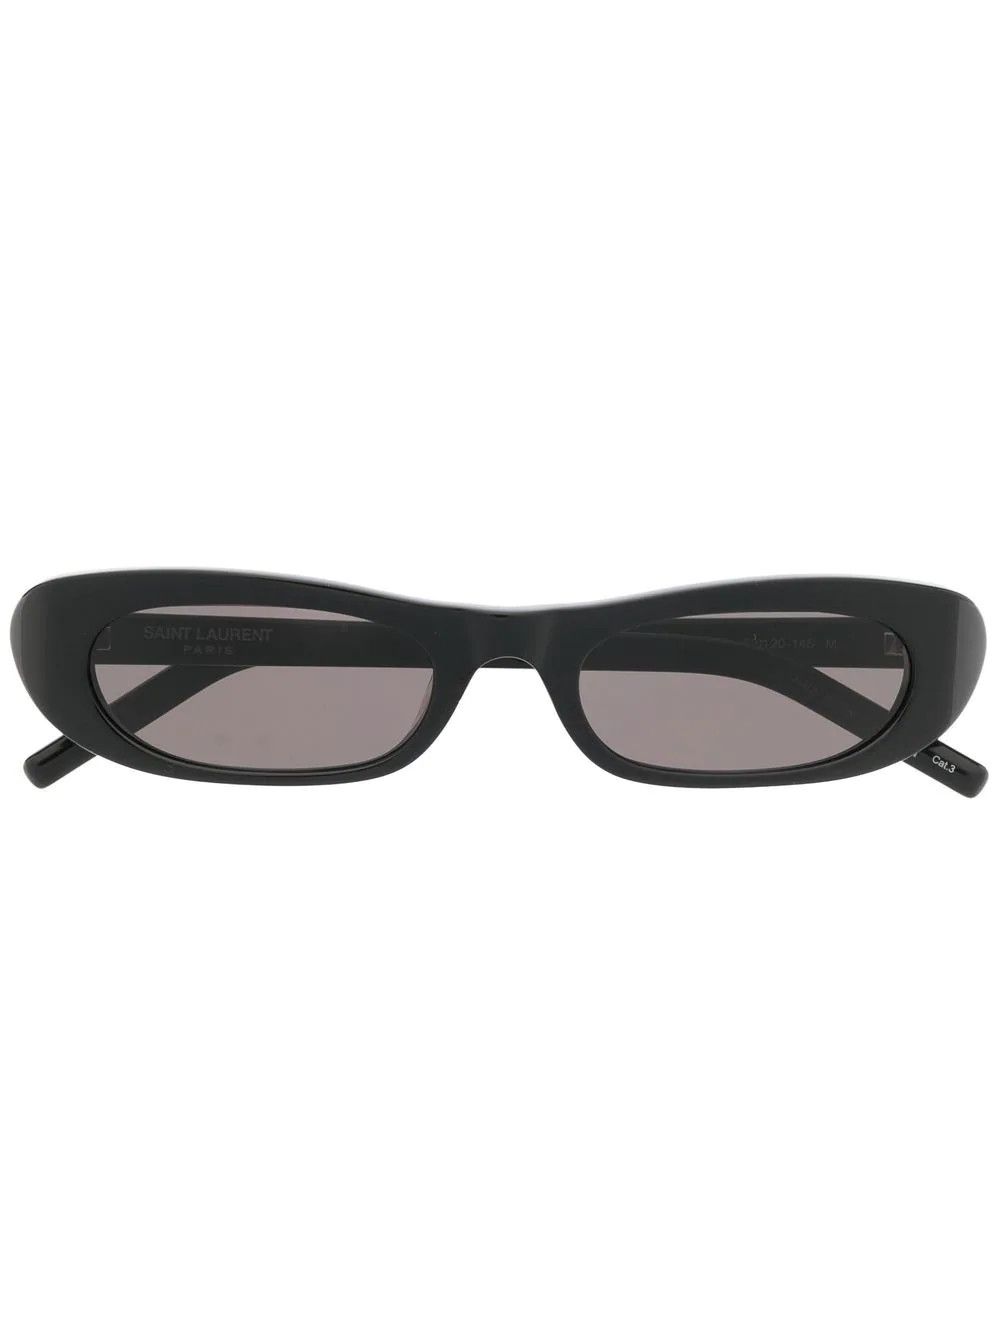 Saint Laurent Eyewear Black Oval Frame Sunglasses - Farfetch | Farfetch Global